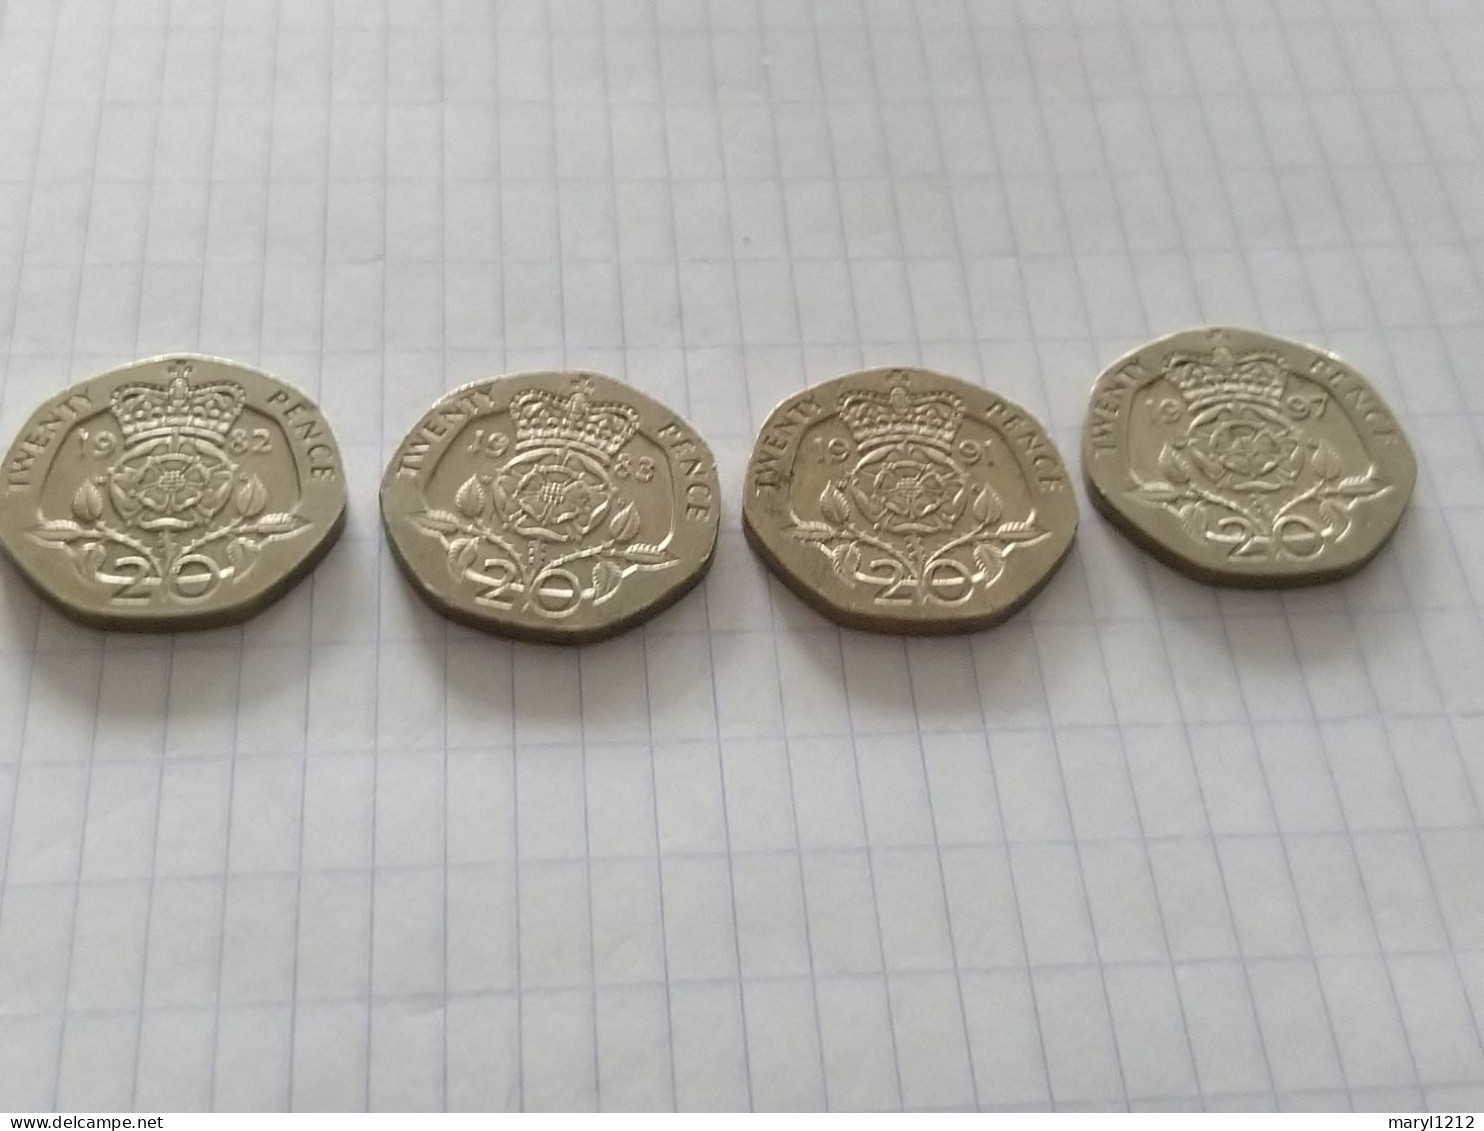 4 Pièces De 20 Pences U.K. 1982 - 1983 - 1991 - 1997 - 20 Pence